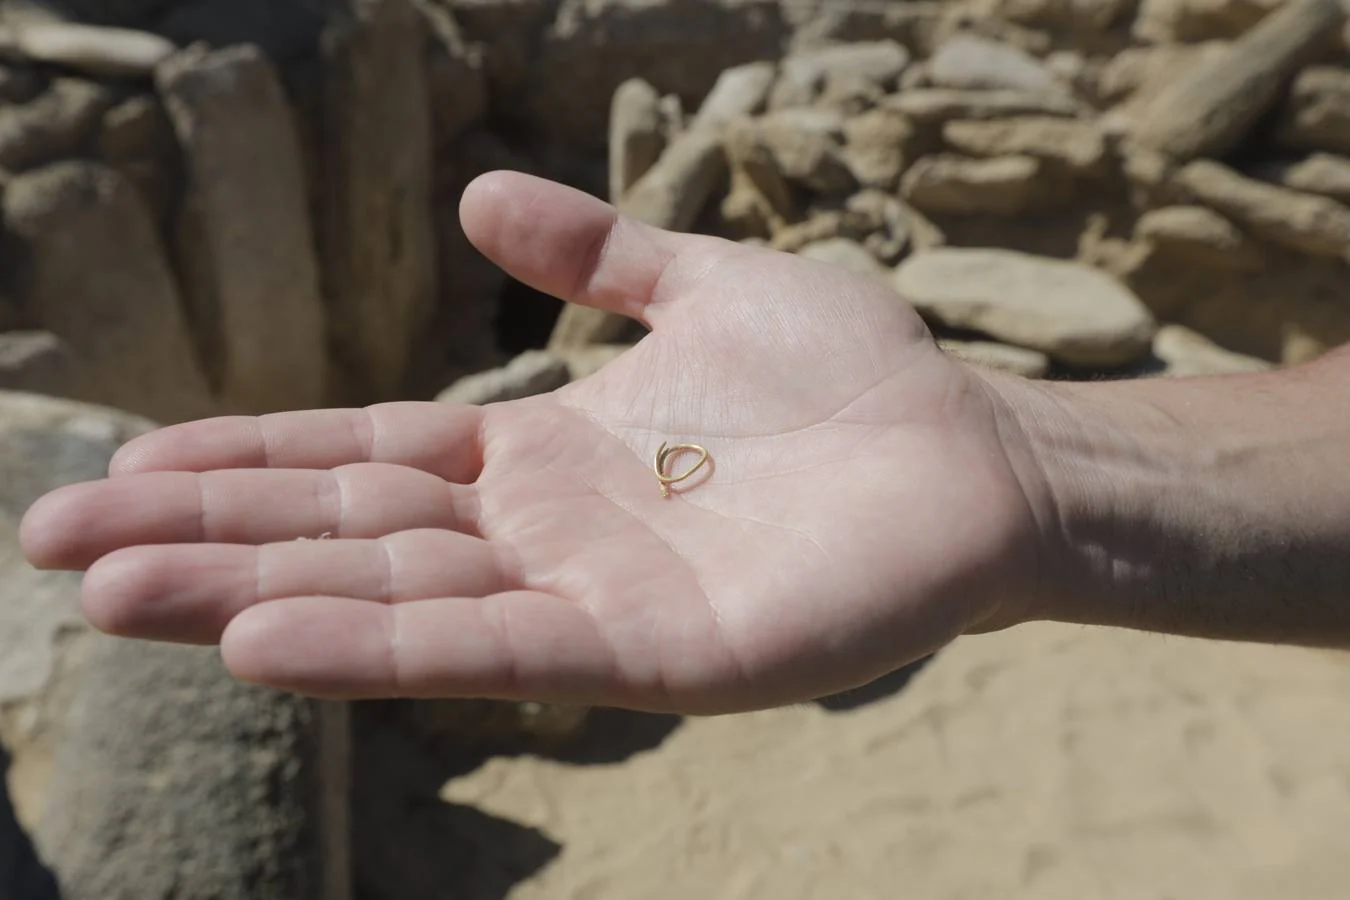 El yacimiento de Caños de Meca, en fotos: una necrópolis de la Edad de Bronce, termas, piscifactoría...